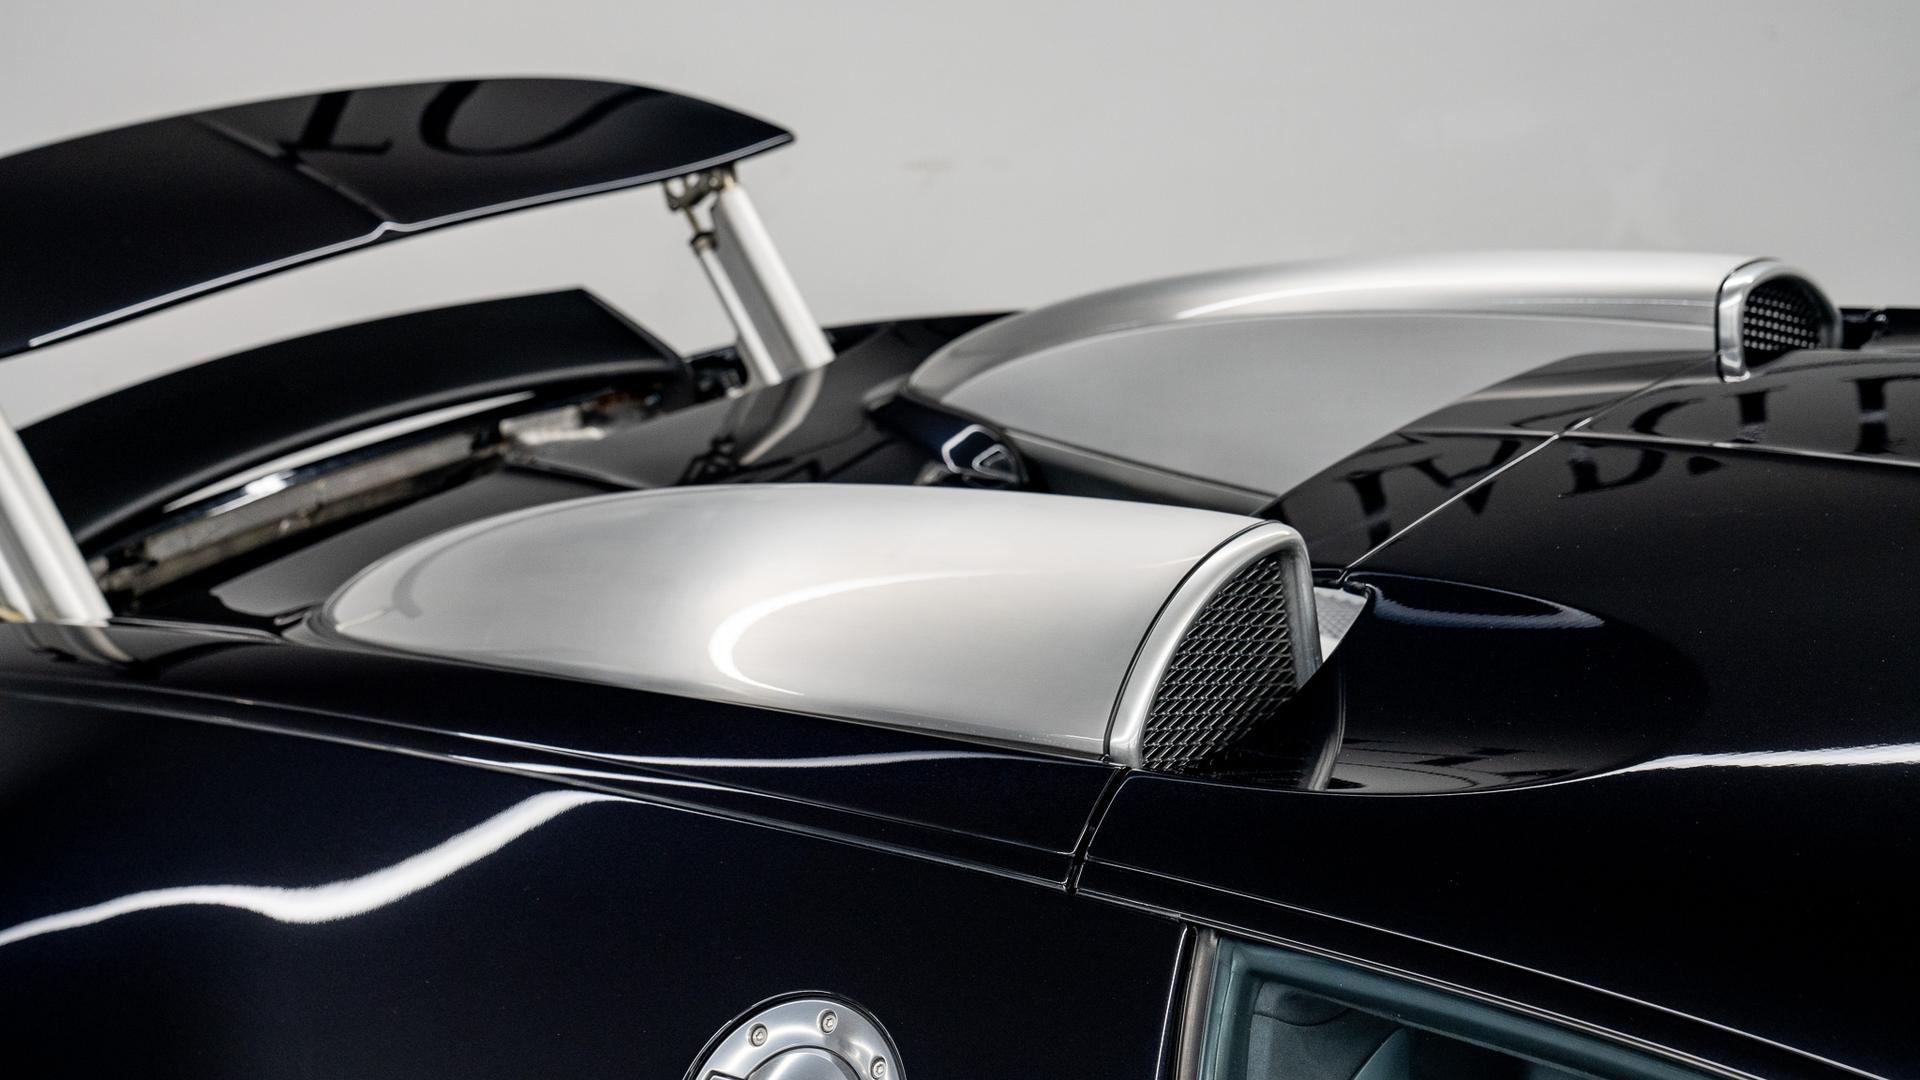 Bugatti Veyron Photo b1660364-cef5-4746-a75e-2a21e1d42f80.jpg